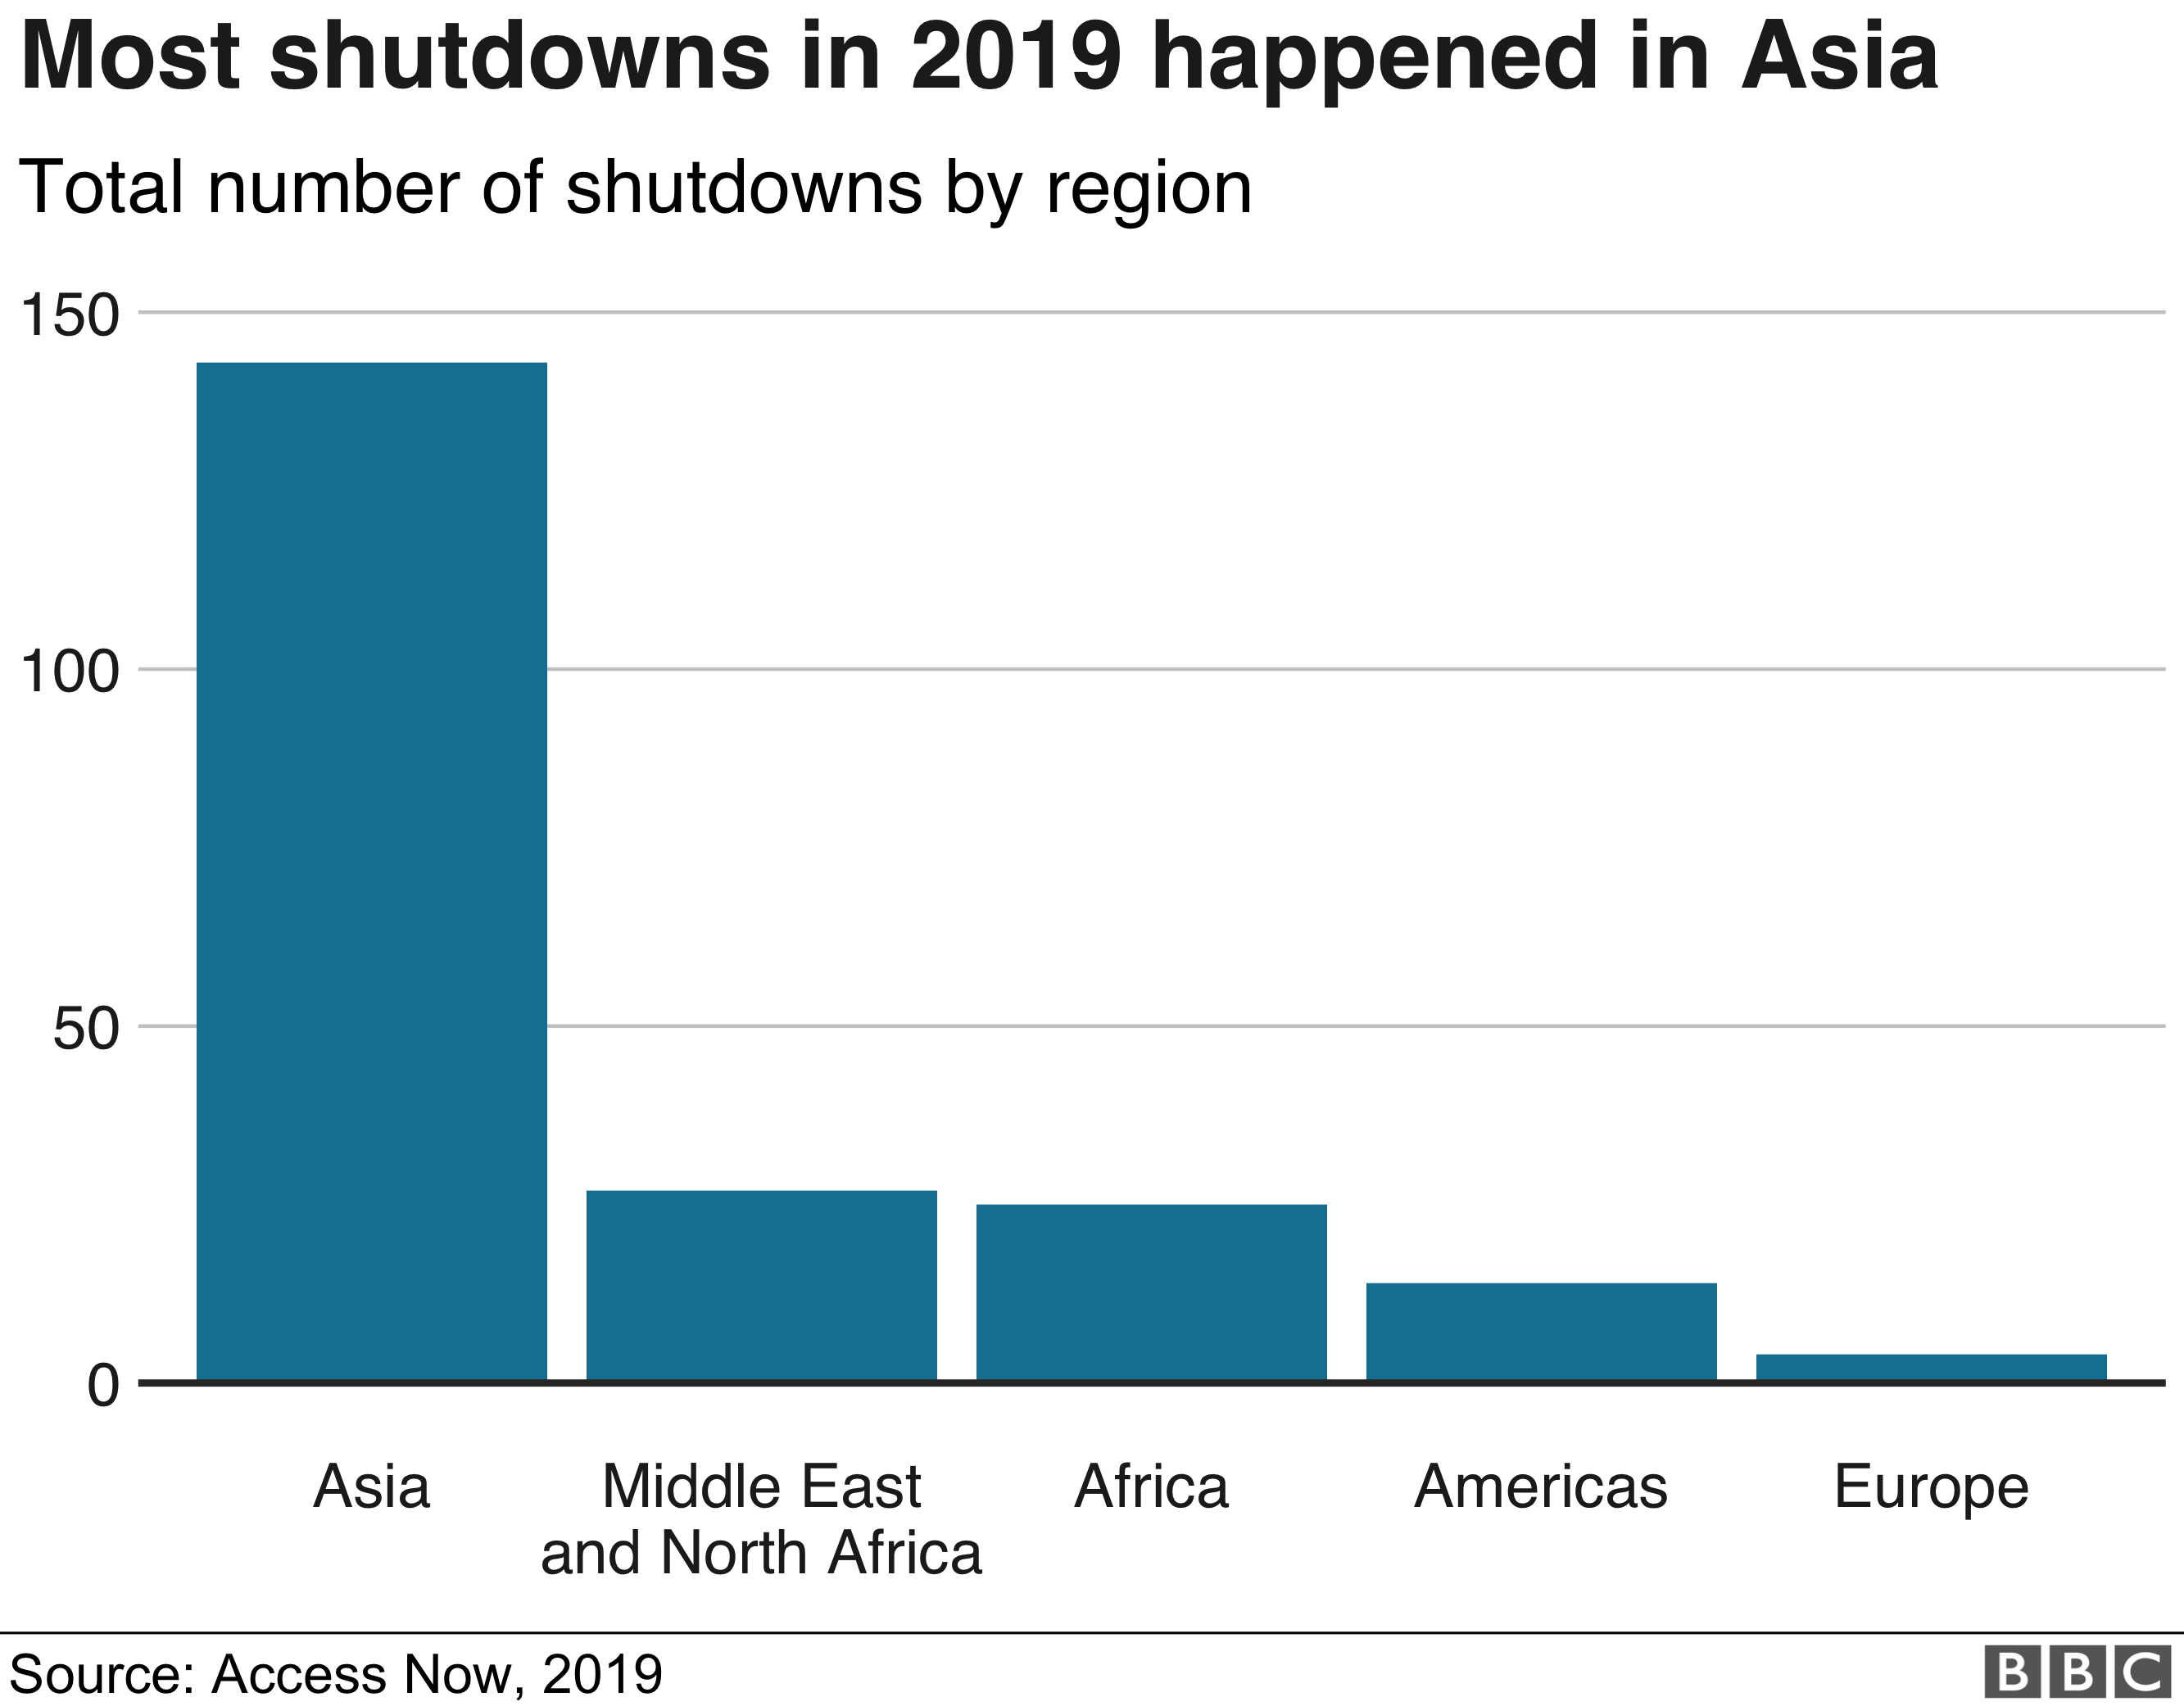 График показывает количество отключений интернета в 2019 году по регионам мира - планка для Азии в четыре-пять раз выше, чем для чего-либо еще